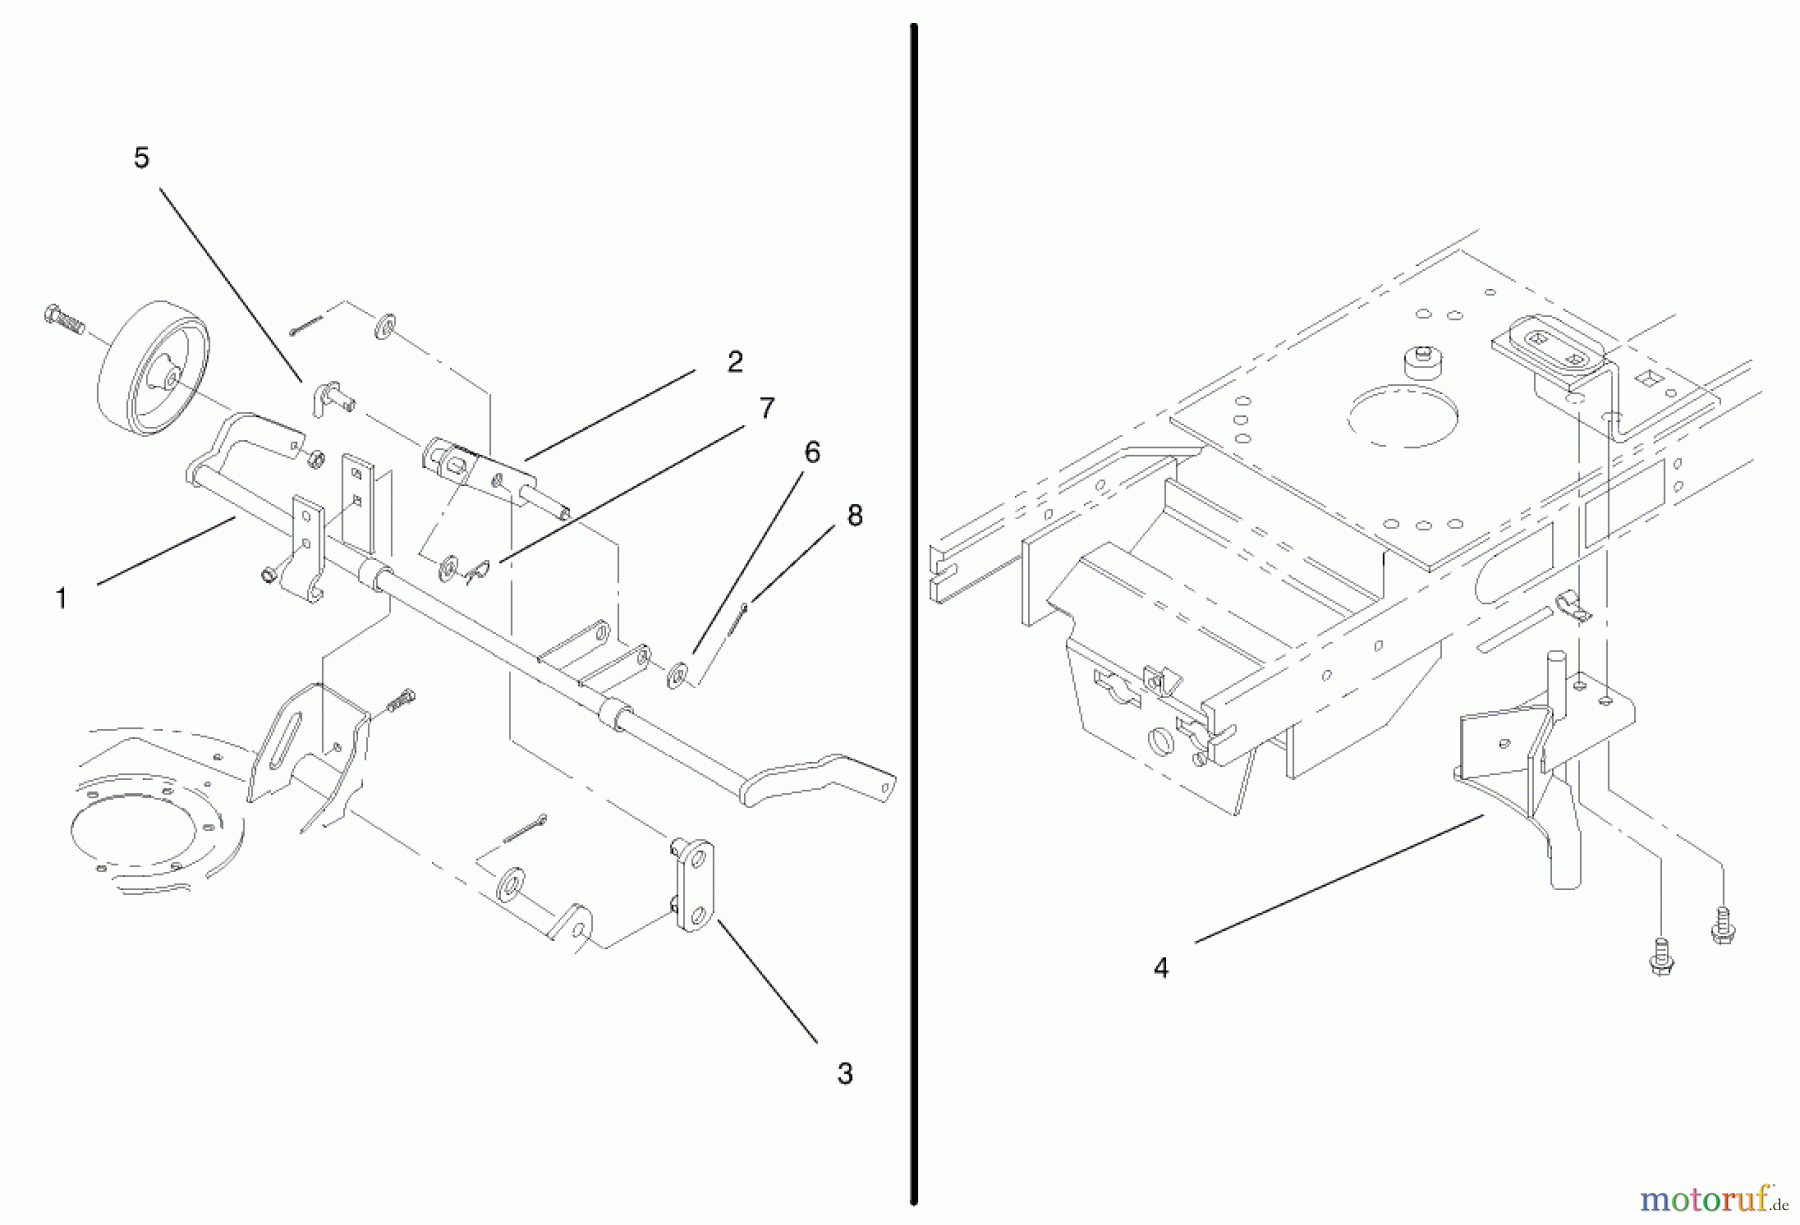  Toro Neu Accessories, Mower 100-6066 - Toro Adapter Kit, 1999 and Earlier 52